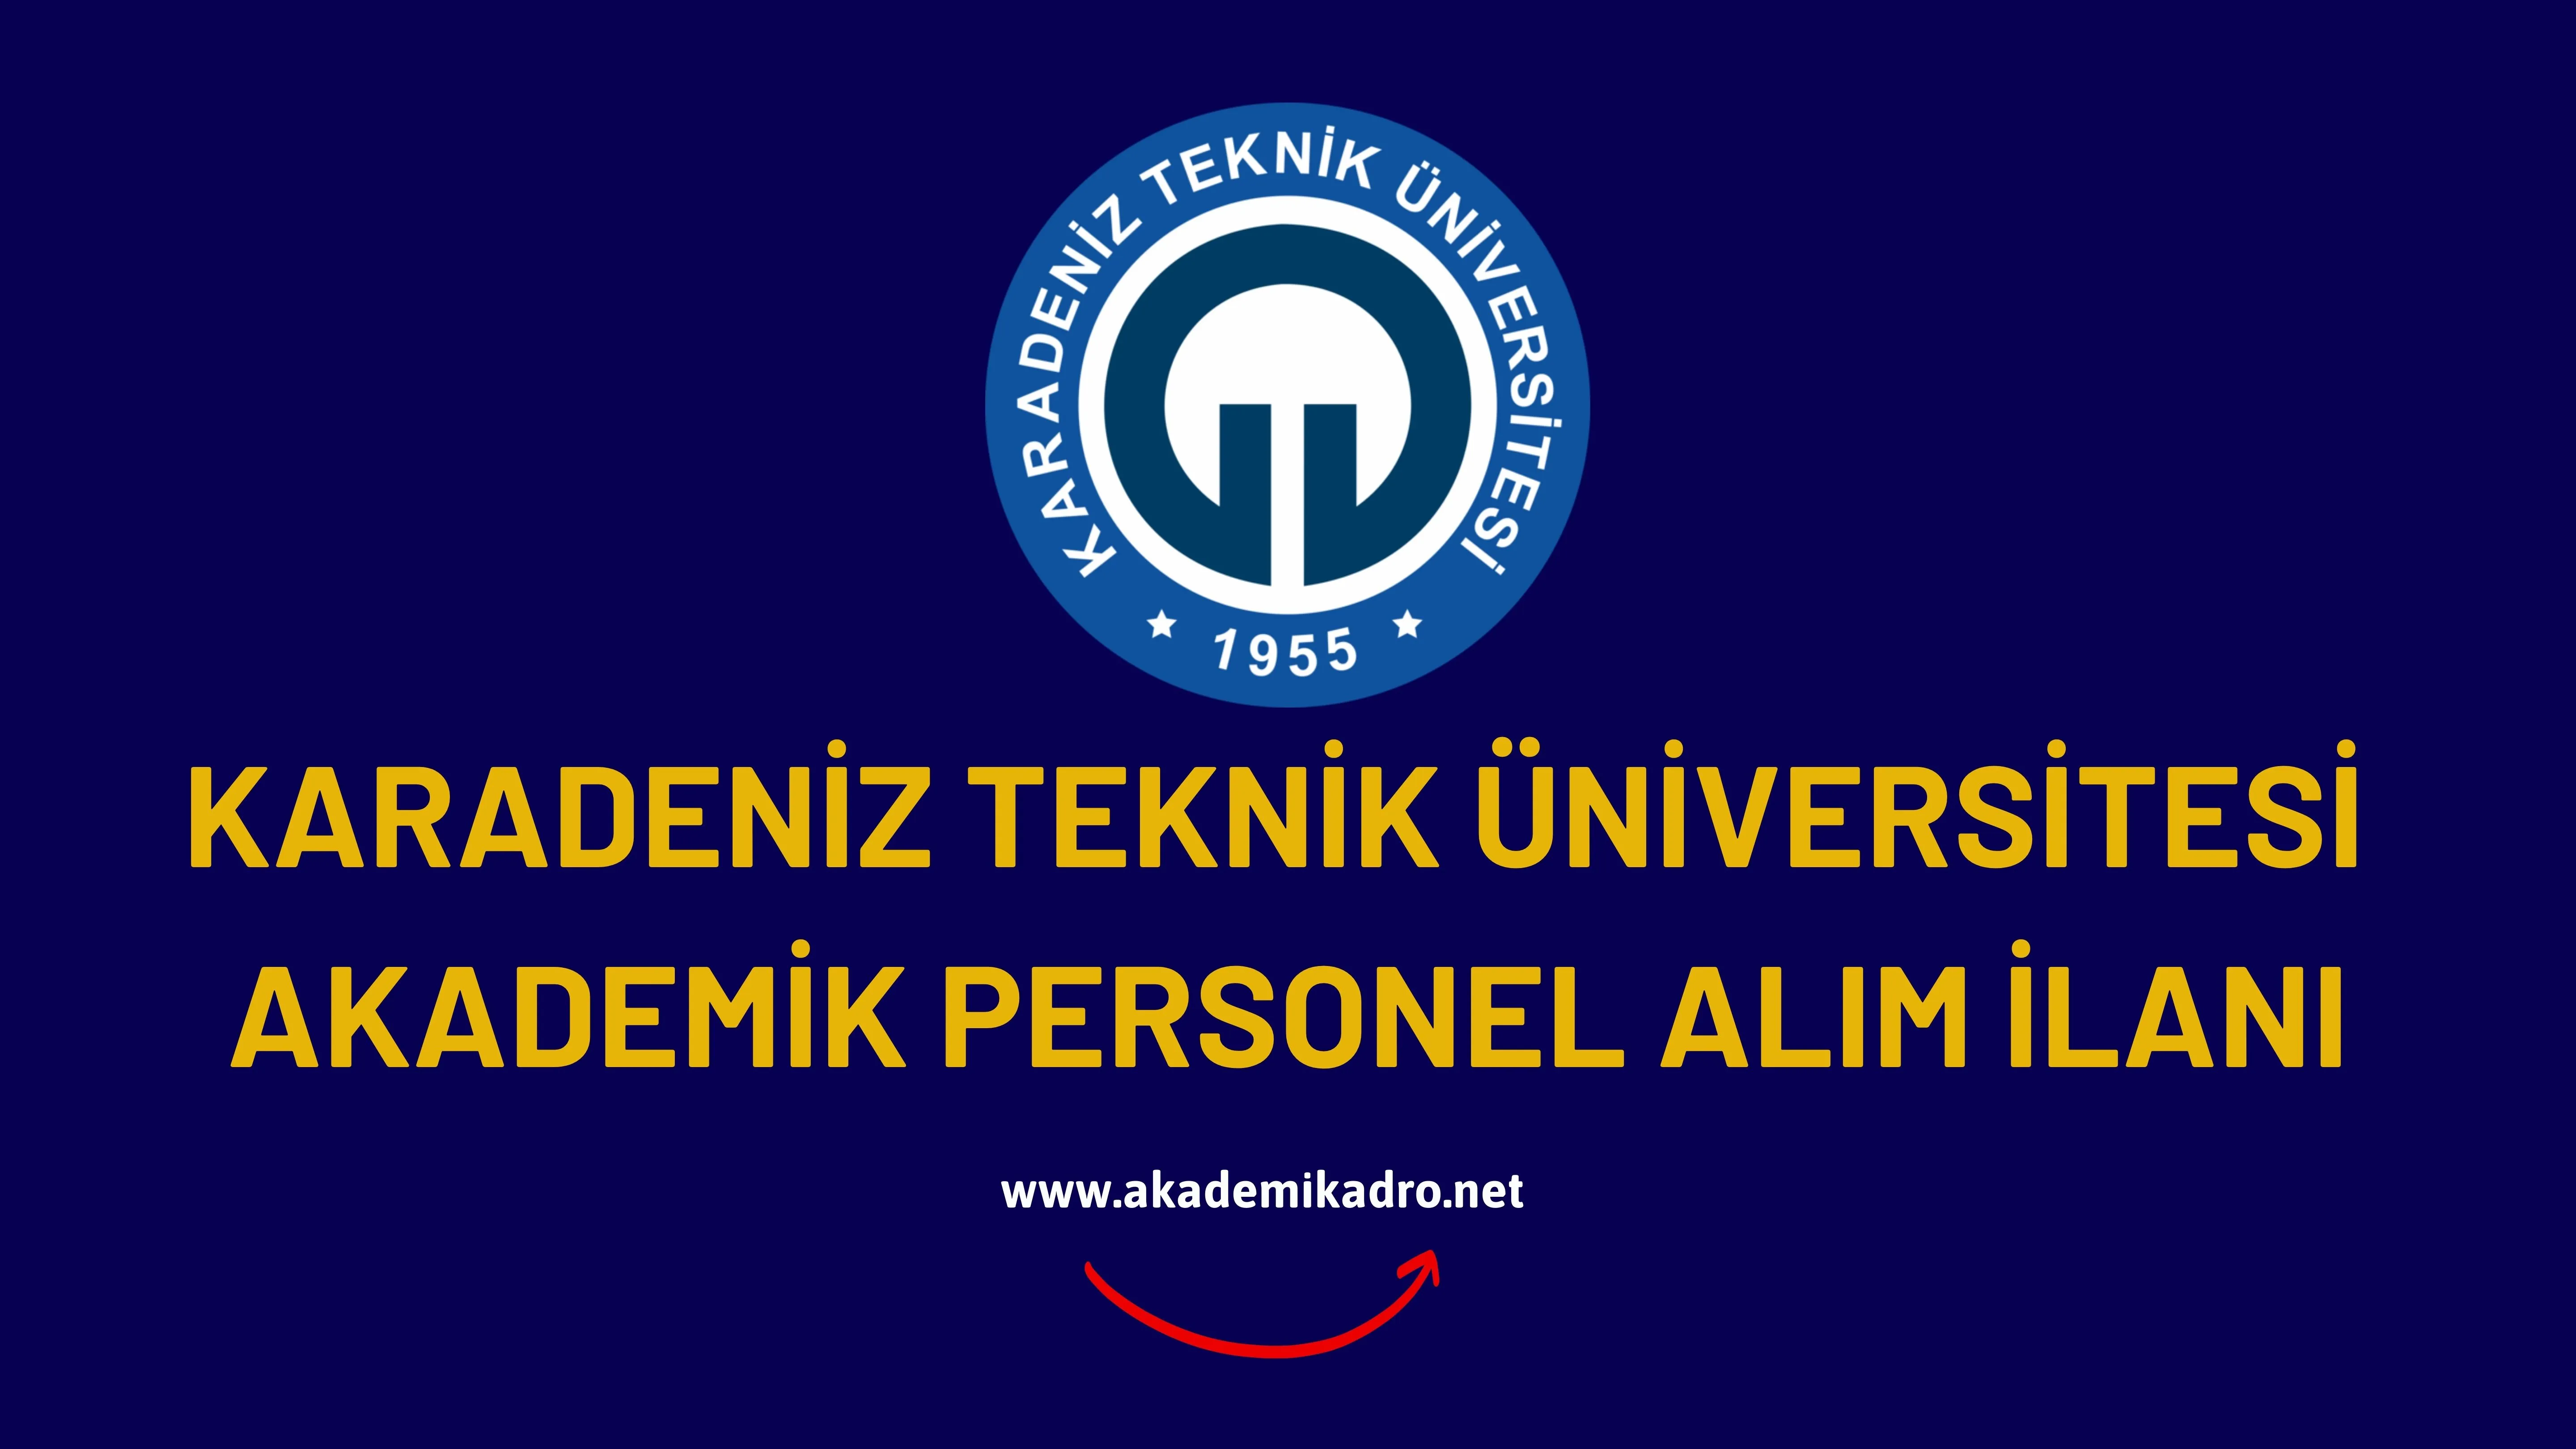 Karadeniz Teknik Üniversitesi  birçok alandan 43 akademik personel alacak.